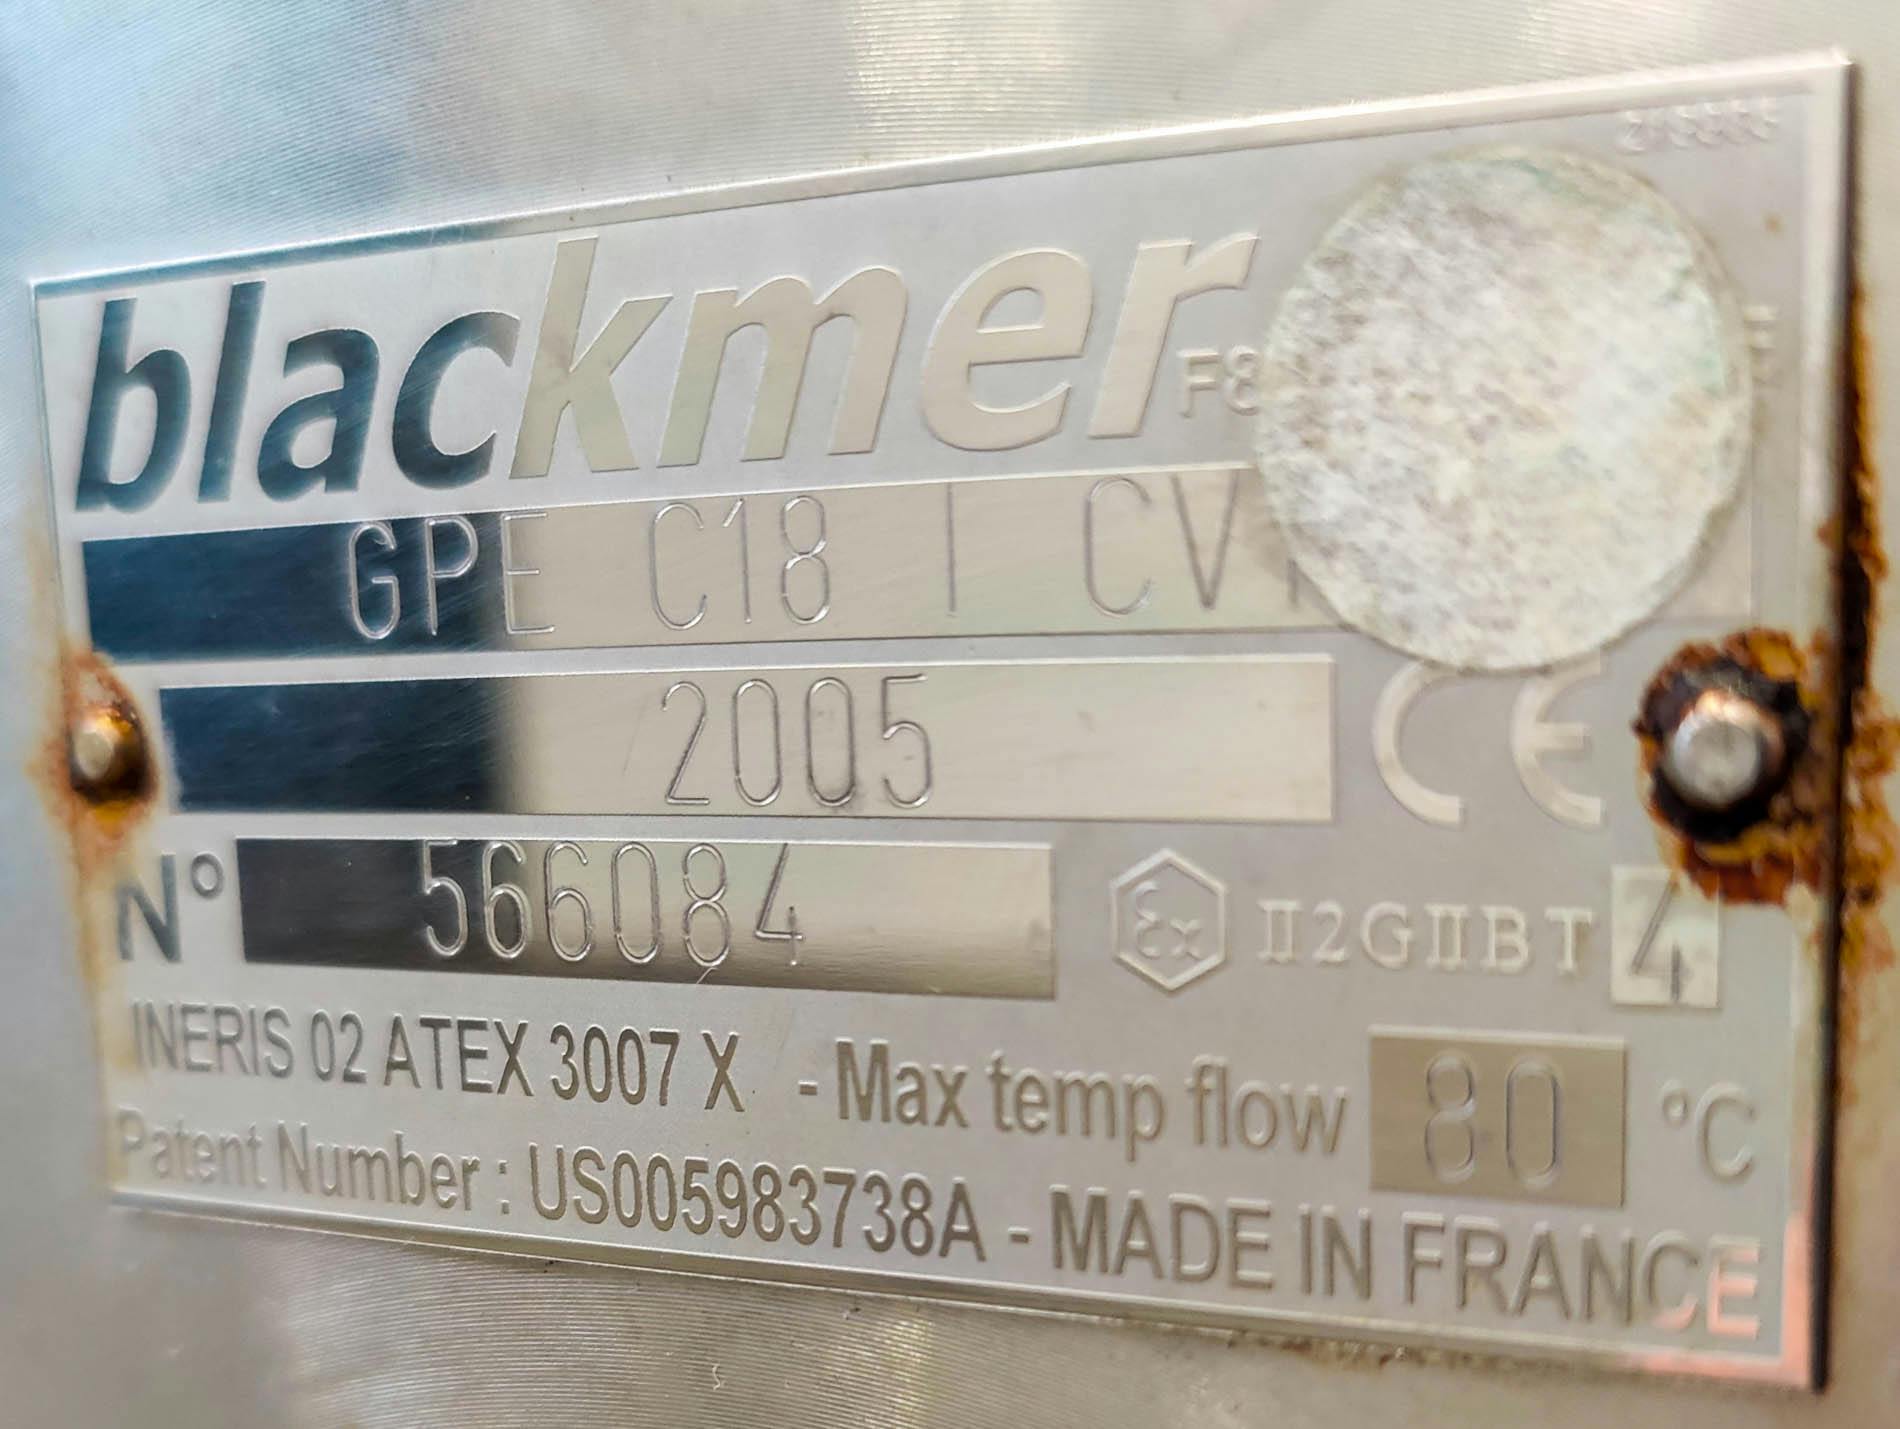 Blackmer GPI C18 I CV - Excentrické šroubové cerpadlo - image 11